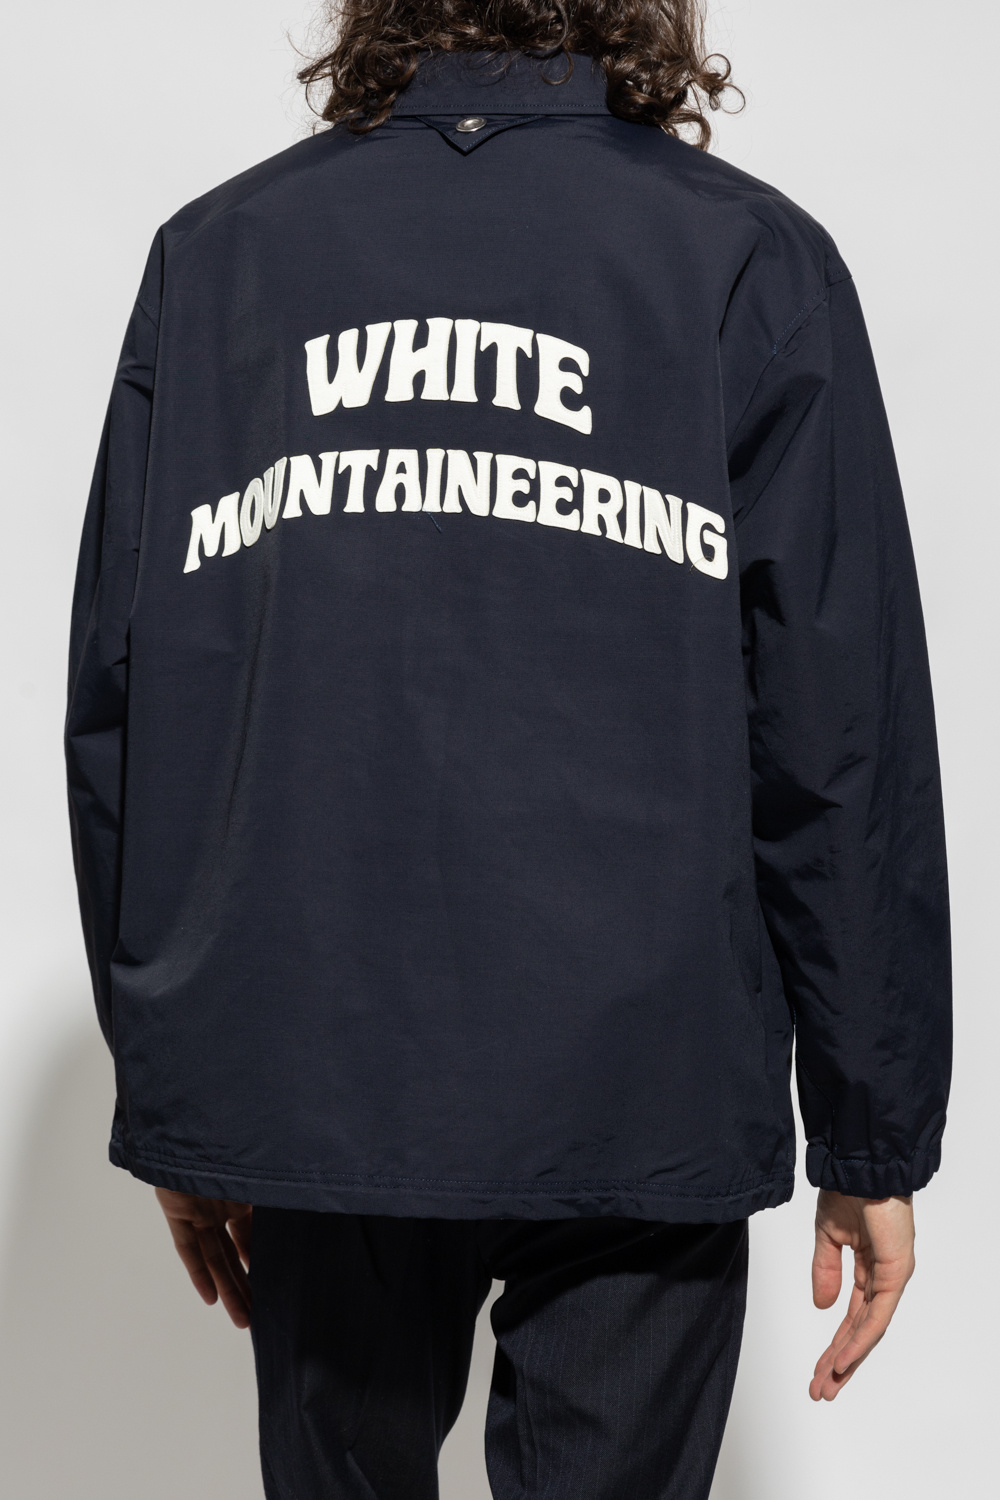 White Mountaineering Rain jacket with logo